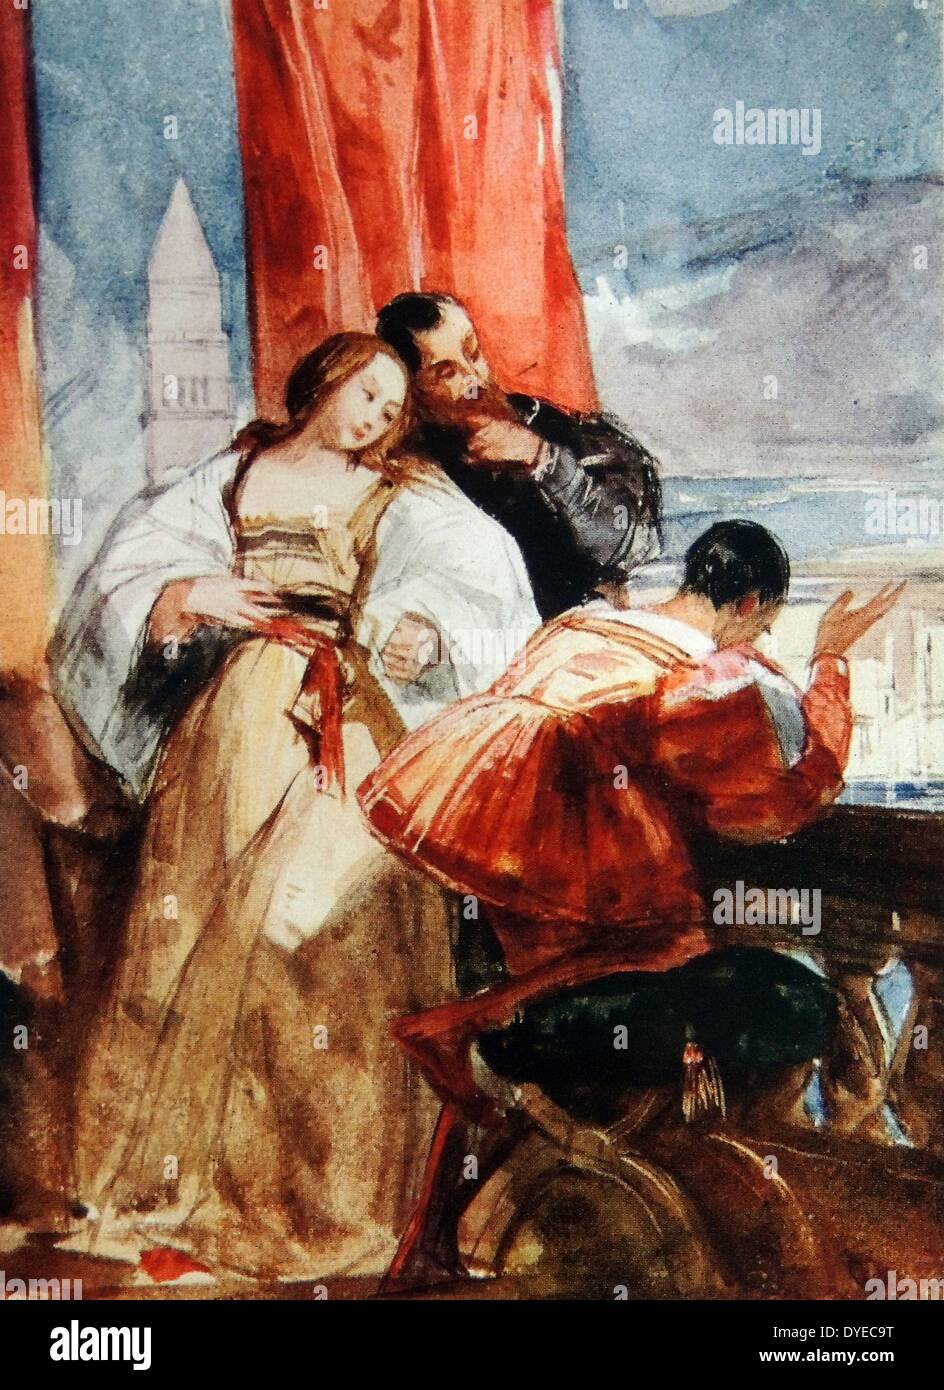 L'aquarelle intitulée "sur le Balcon". Le tableau représente deux hommes et une jeune femme, tous de fond noble, donnant sur un balcon à Venise. Par Giuseppe de Nittis (1802 - 1828) peintre romantique anglais. Datée 1825 Banque D'Images